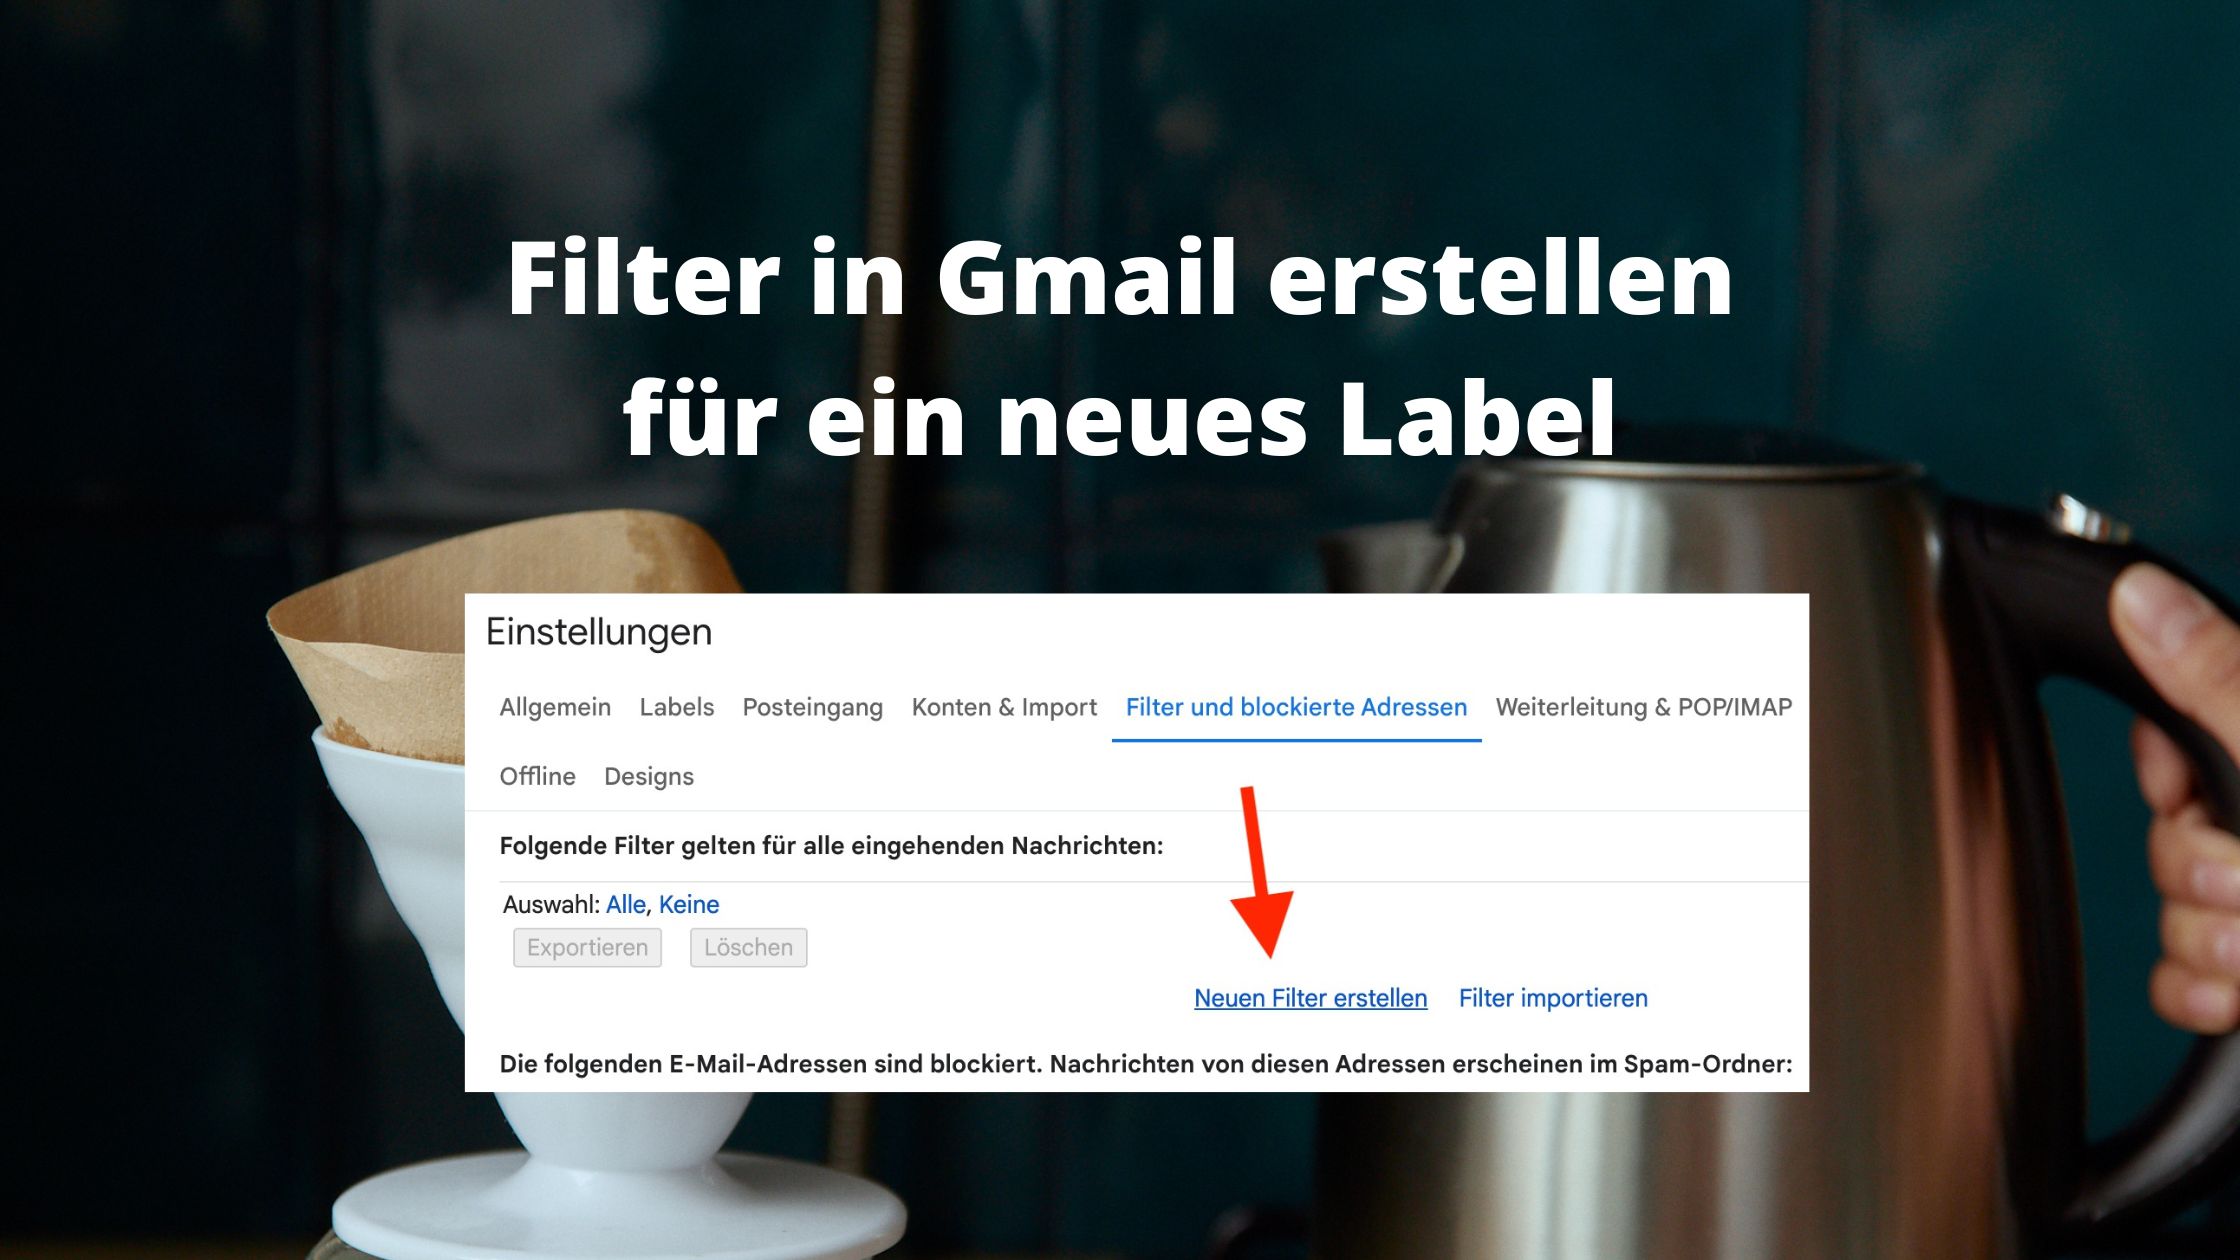 Filter in Gmail erstellen für ein neues Label